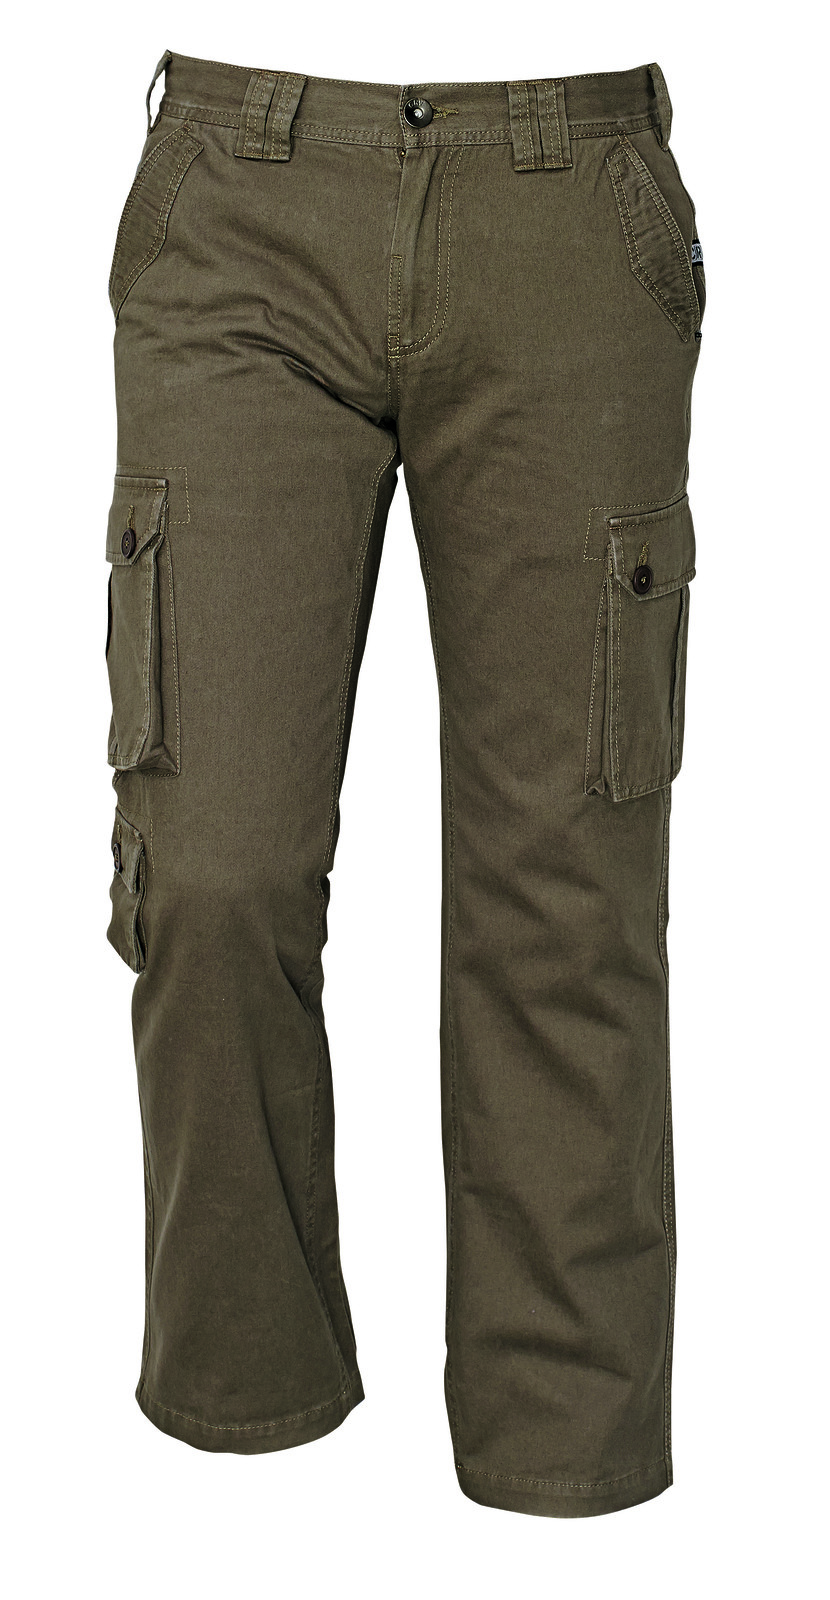 Pánske nohavice Chena kapsáče - veľkosť: L, farba: olivová zelená